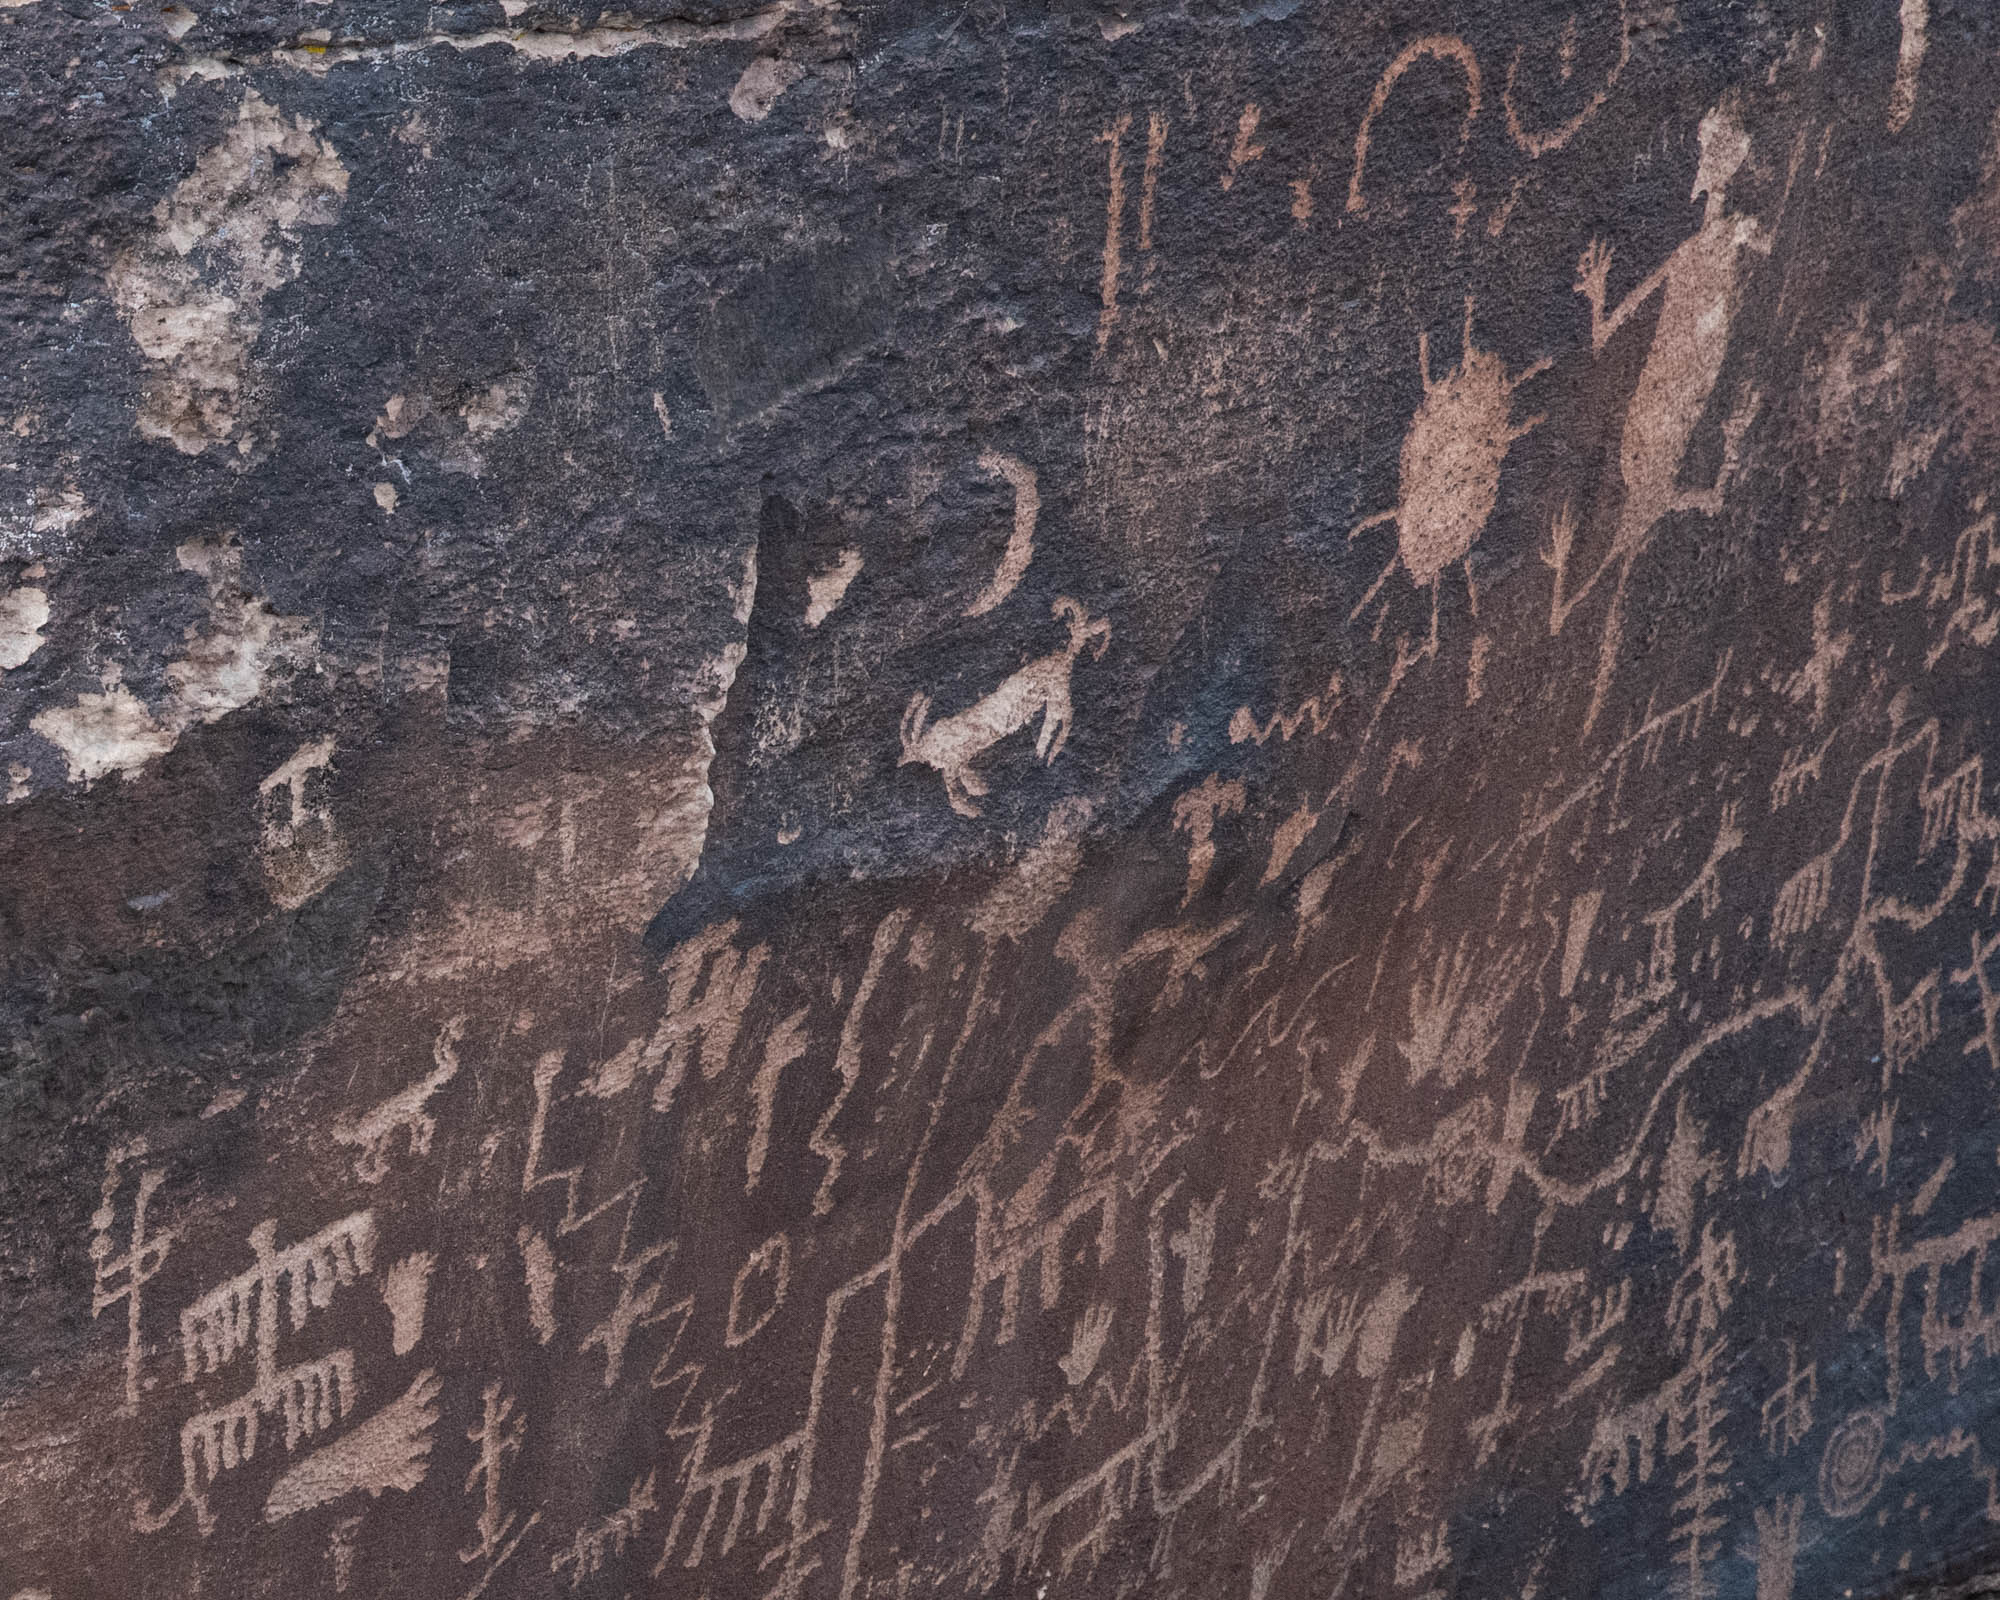 native american petroglyphs, petroglyphs, native american art, rock art, ancient art, navajo art